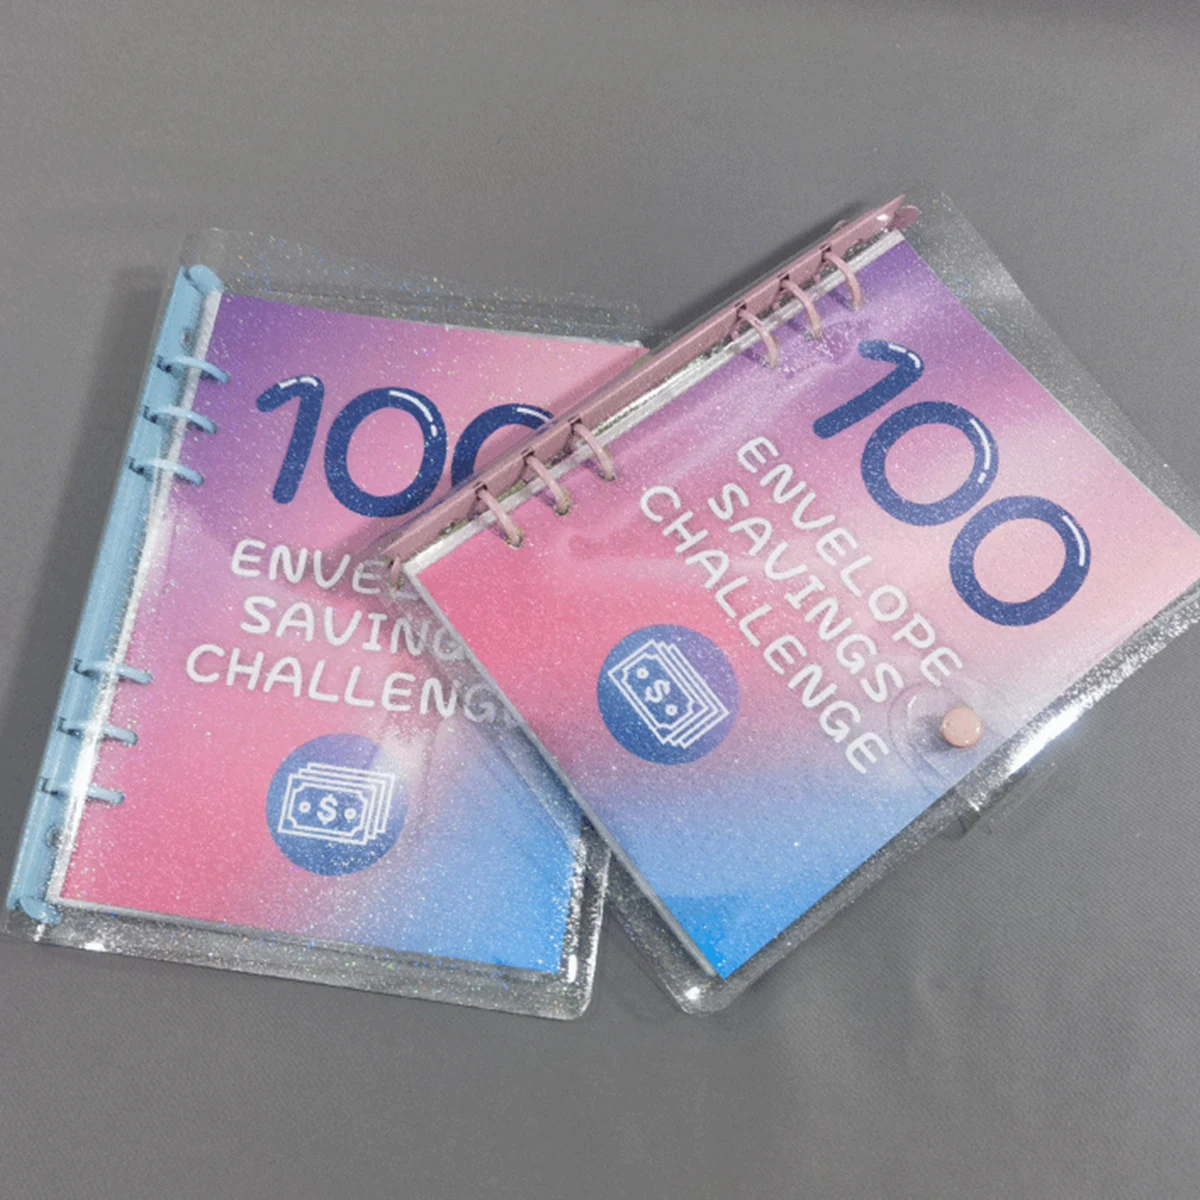 

100 Envelope Challenge Laser Binder Couple Challenge Event Save Together Challenge Notepad Savings Folder